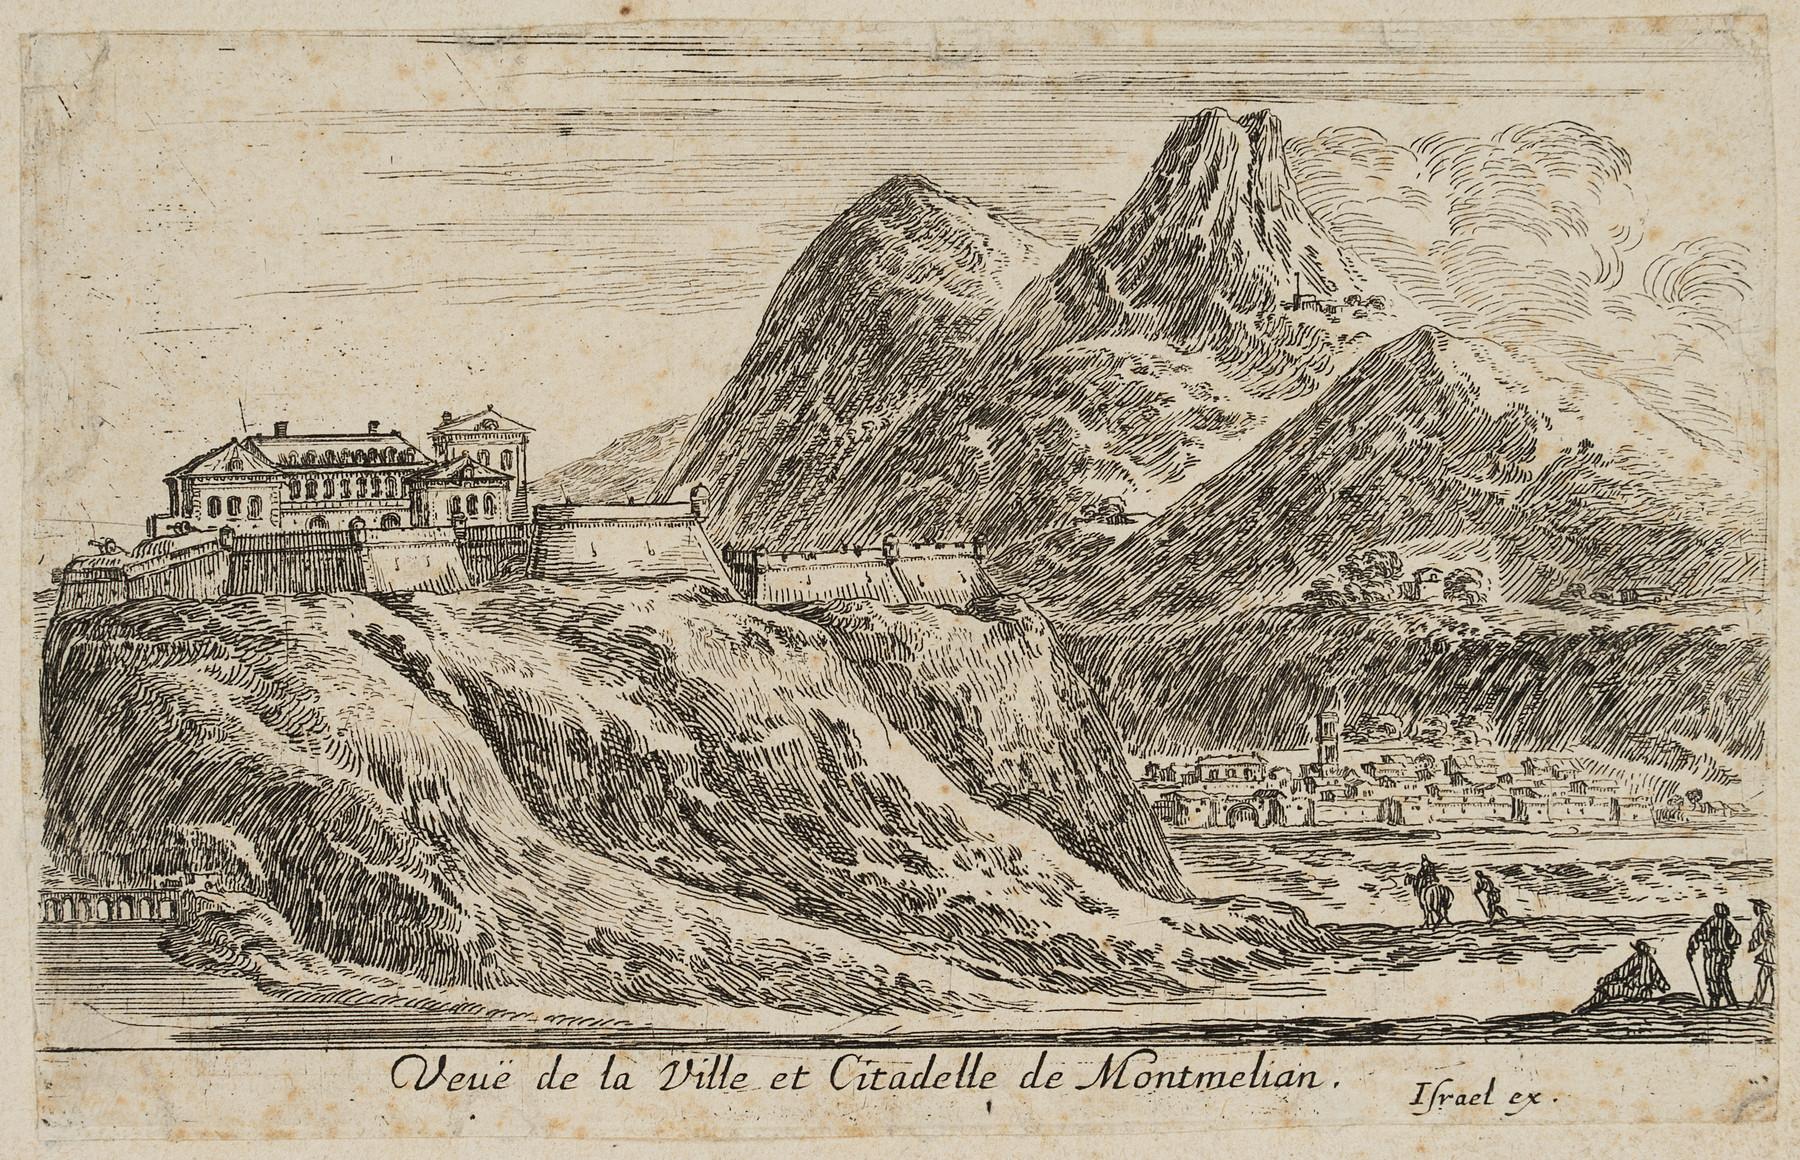 Israël Silvestre : Veuë de la Ville et Citadelle de Montmelian.